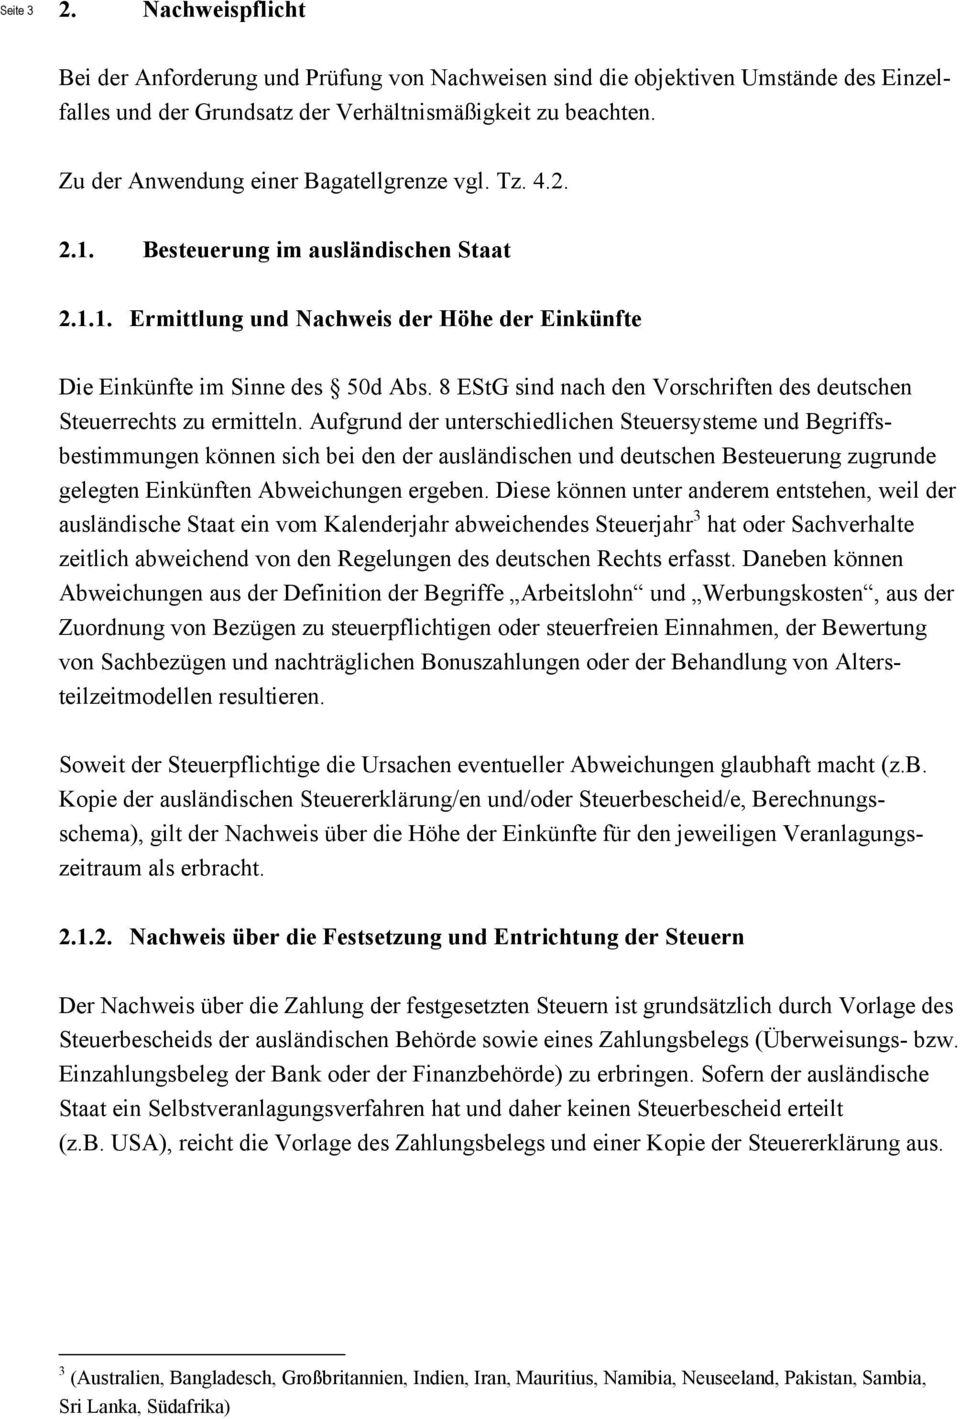 8 EStG sind nach den Vorschriften des deutschen Steuerrechts zu ermitteln.